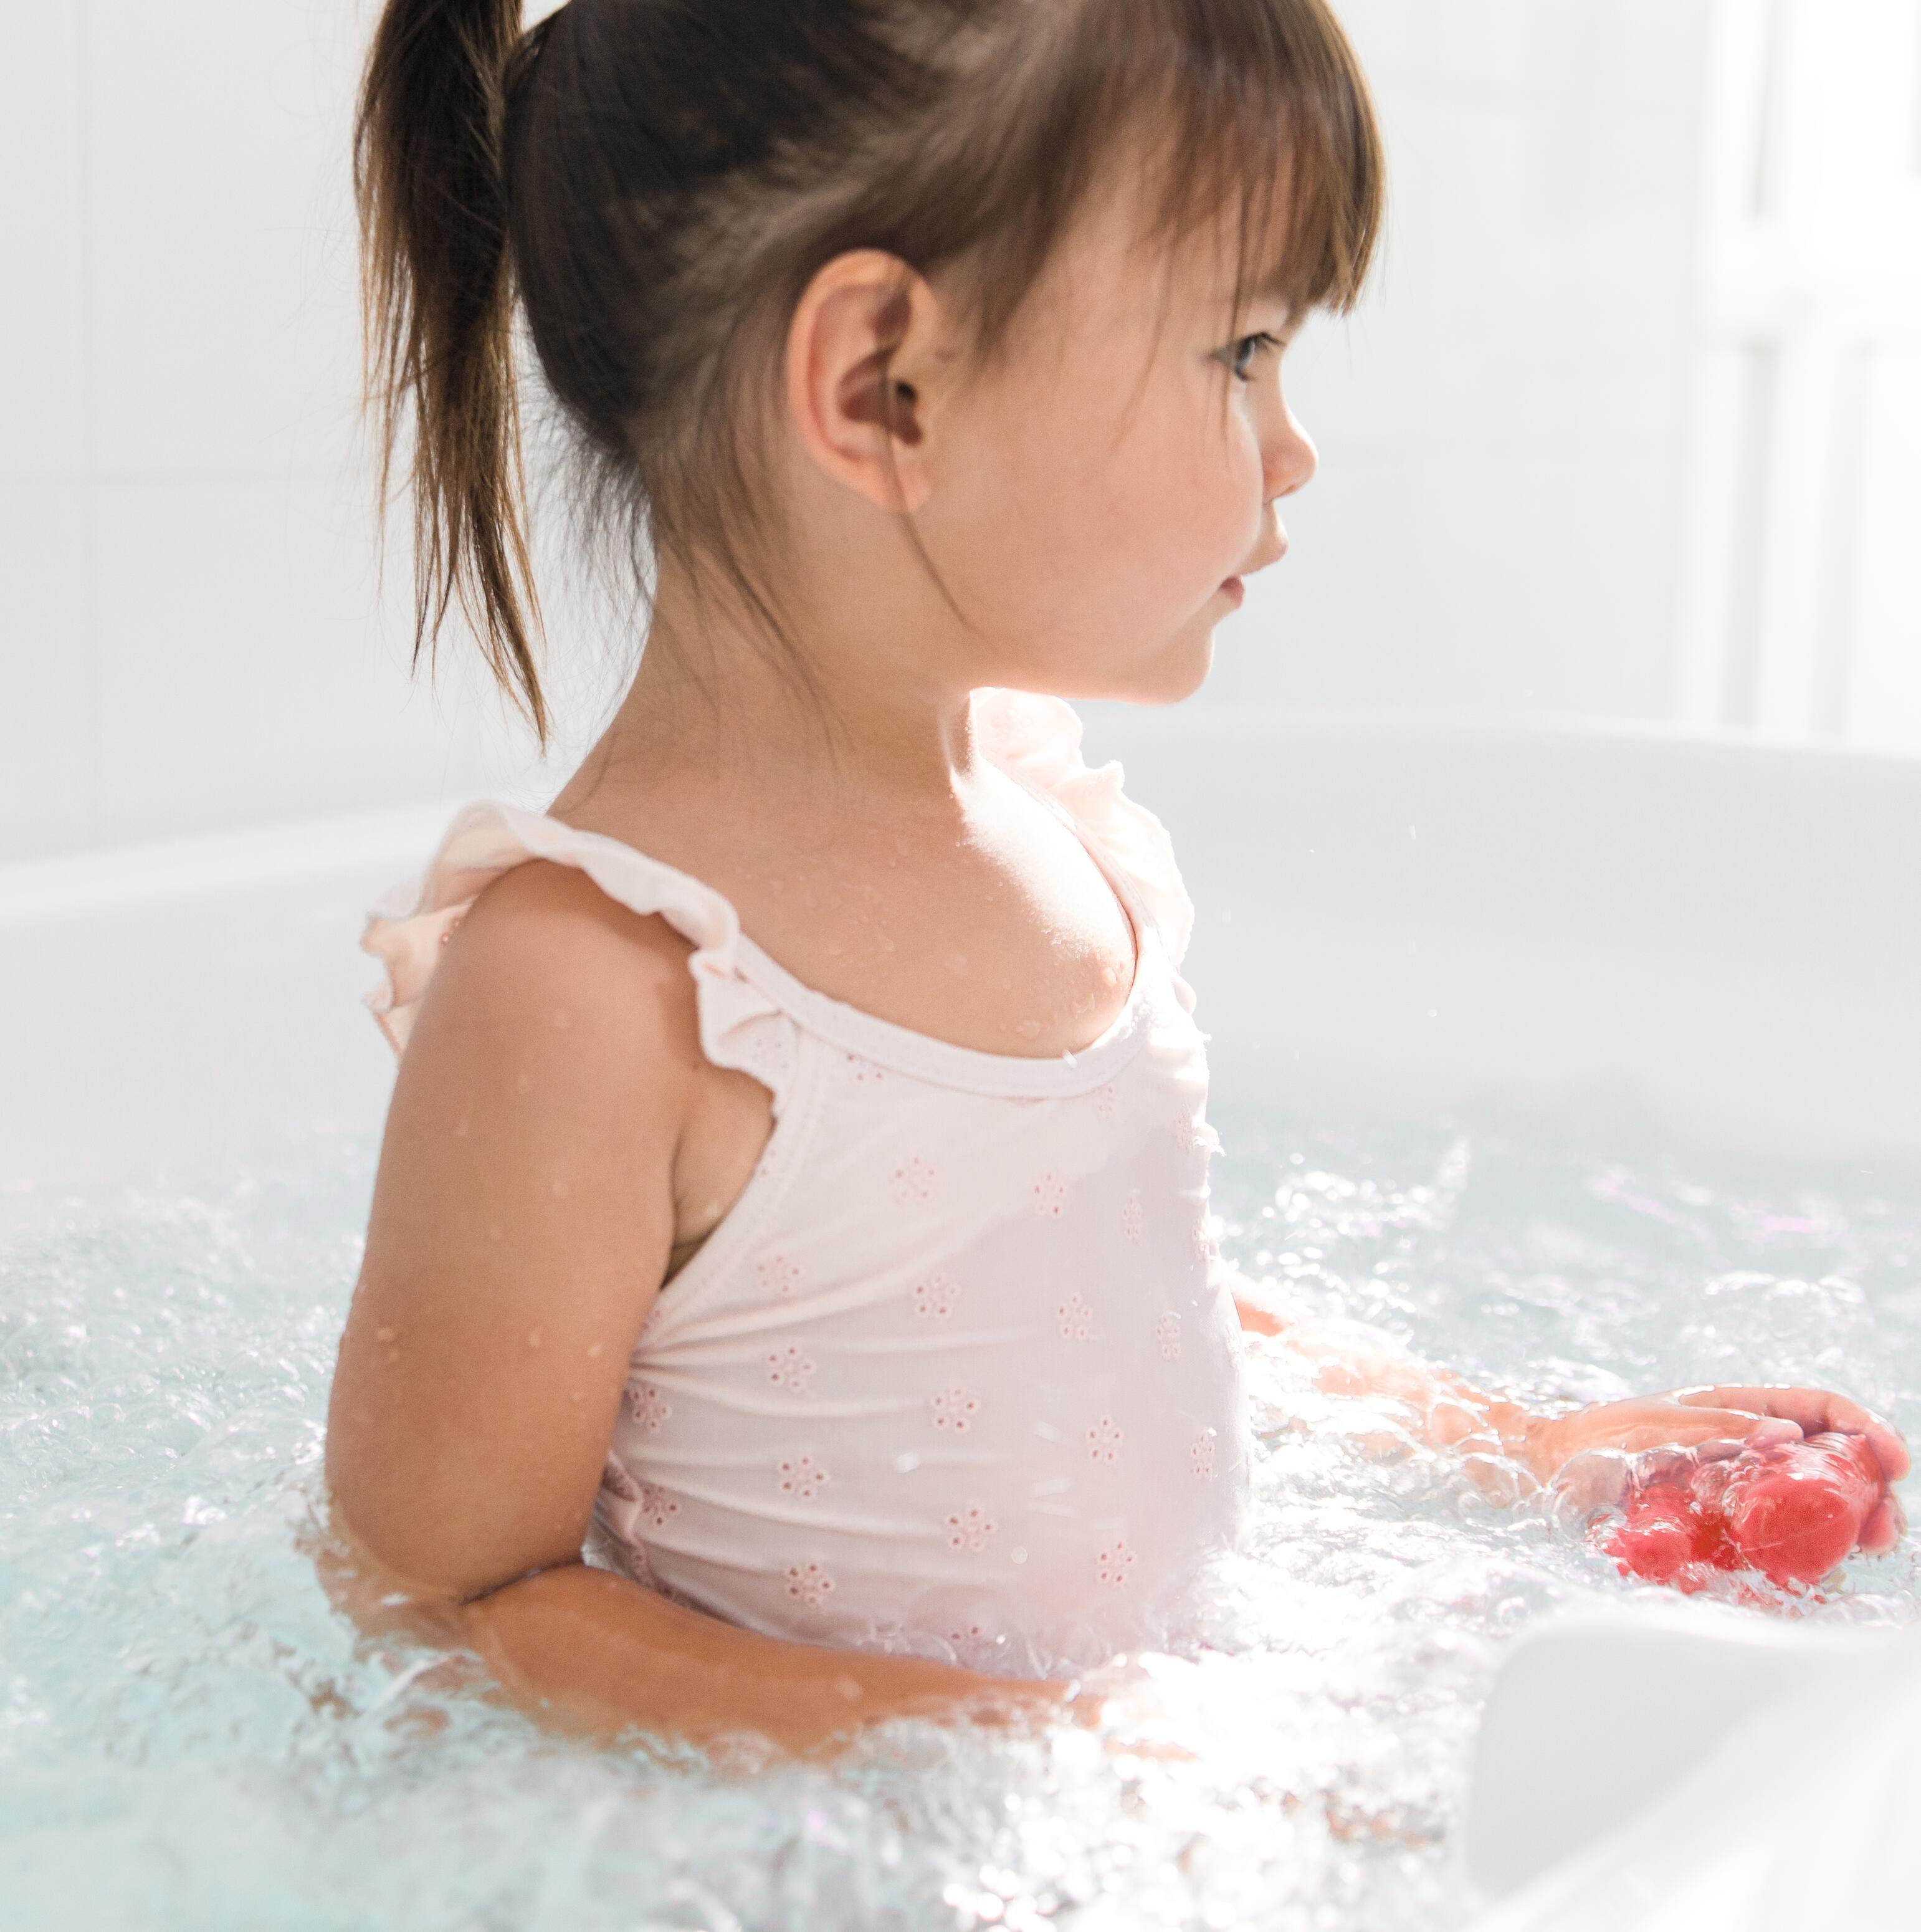 Ekzém a psoriáza: môže sa moje dieťa kúpať?